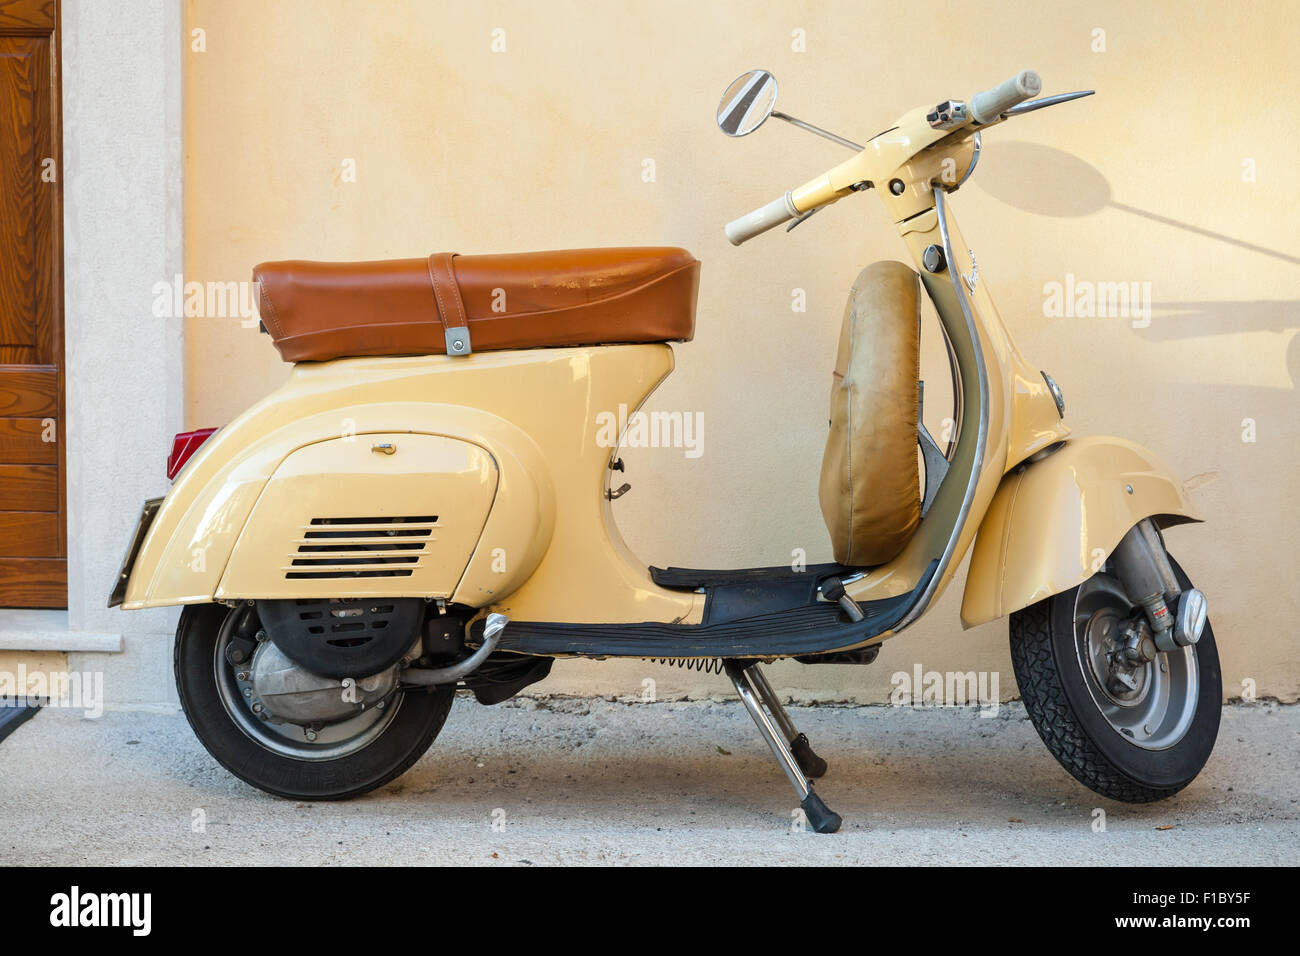 Gaeta, Italie - 19 août 2015 : Classic scooter Vespa jaune est garé près du mur Banque D'Images